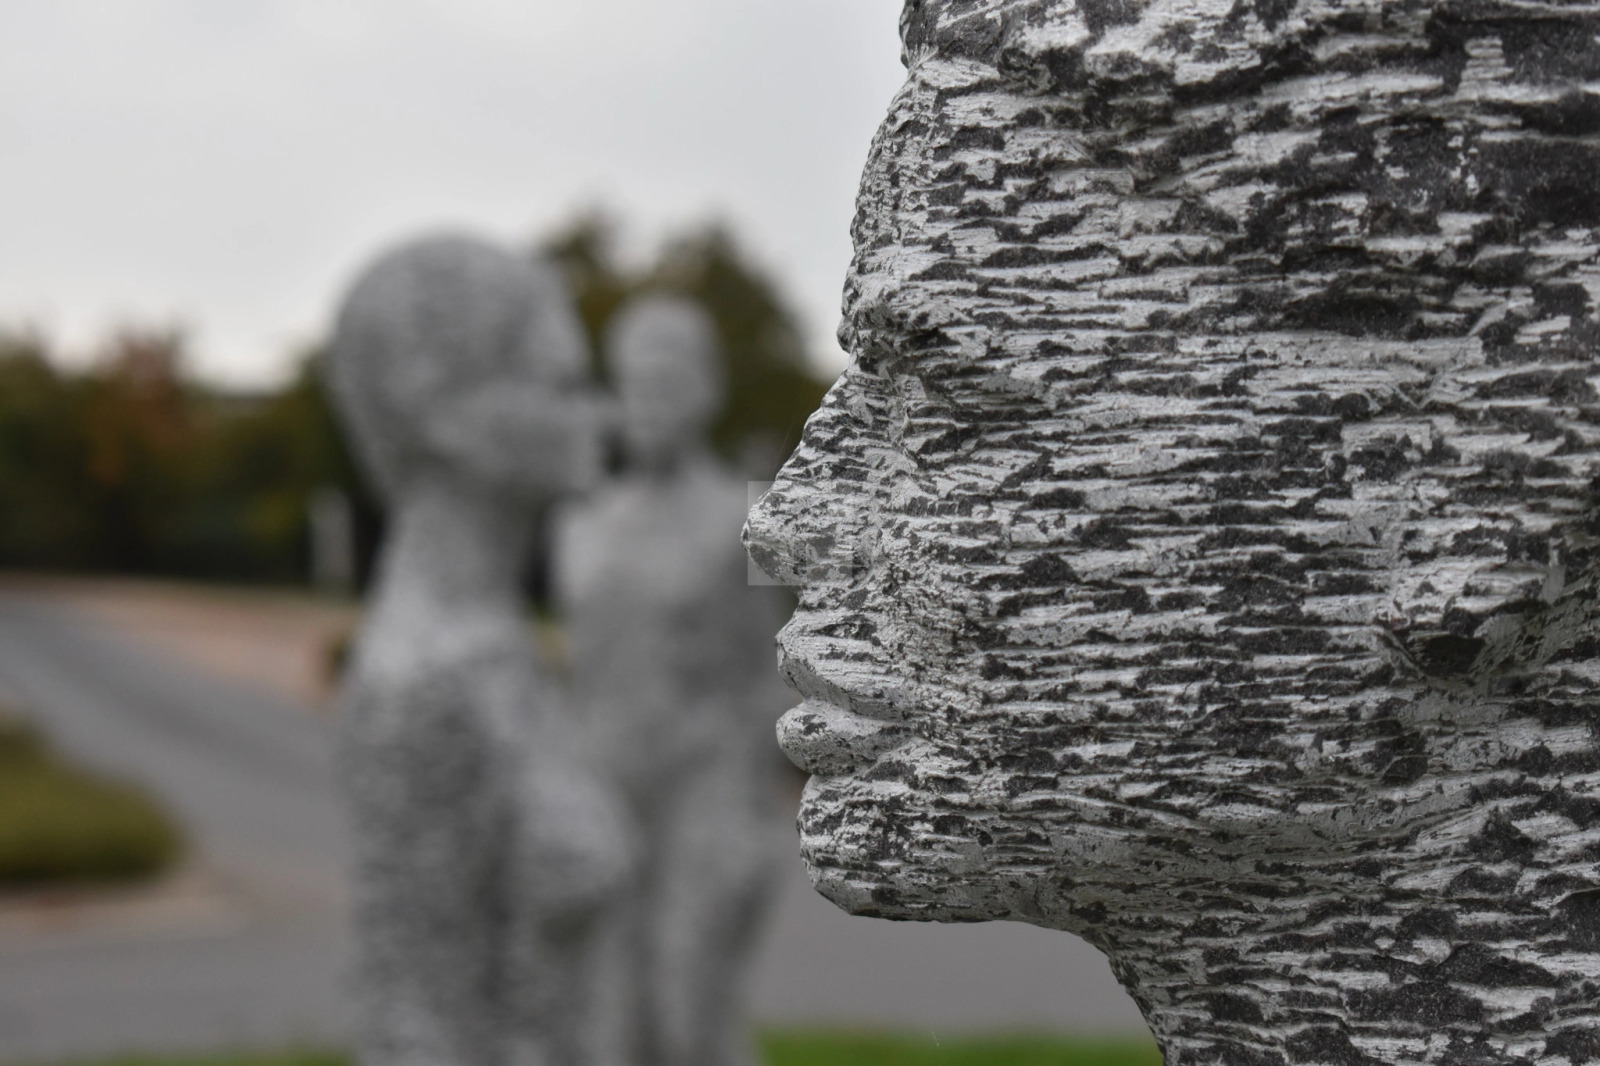 Bluestone face sculpture